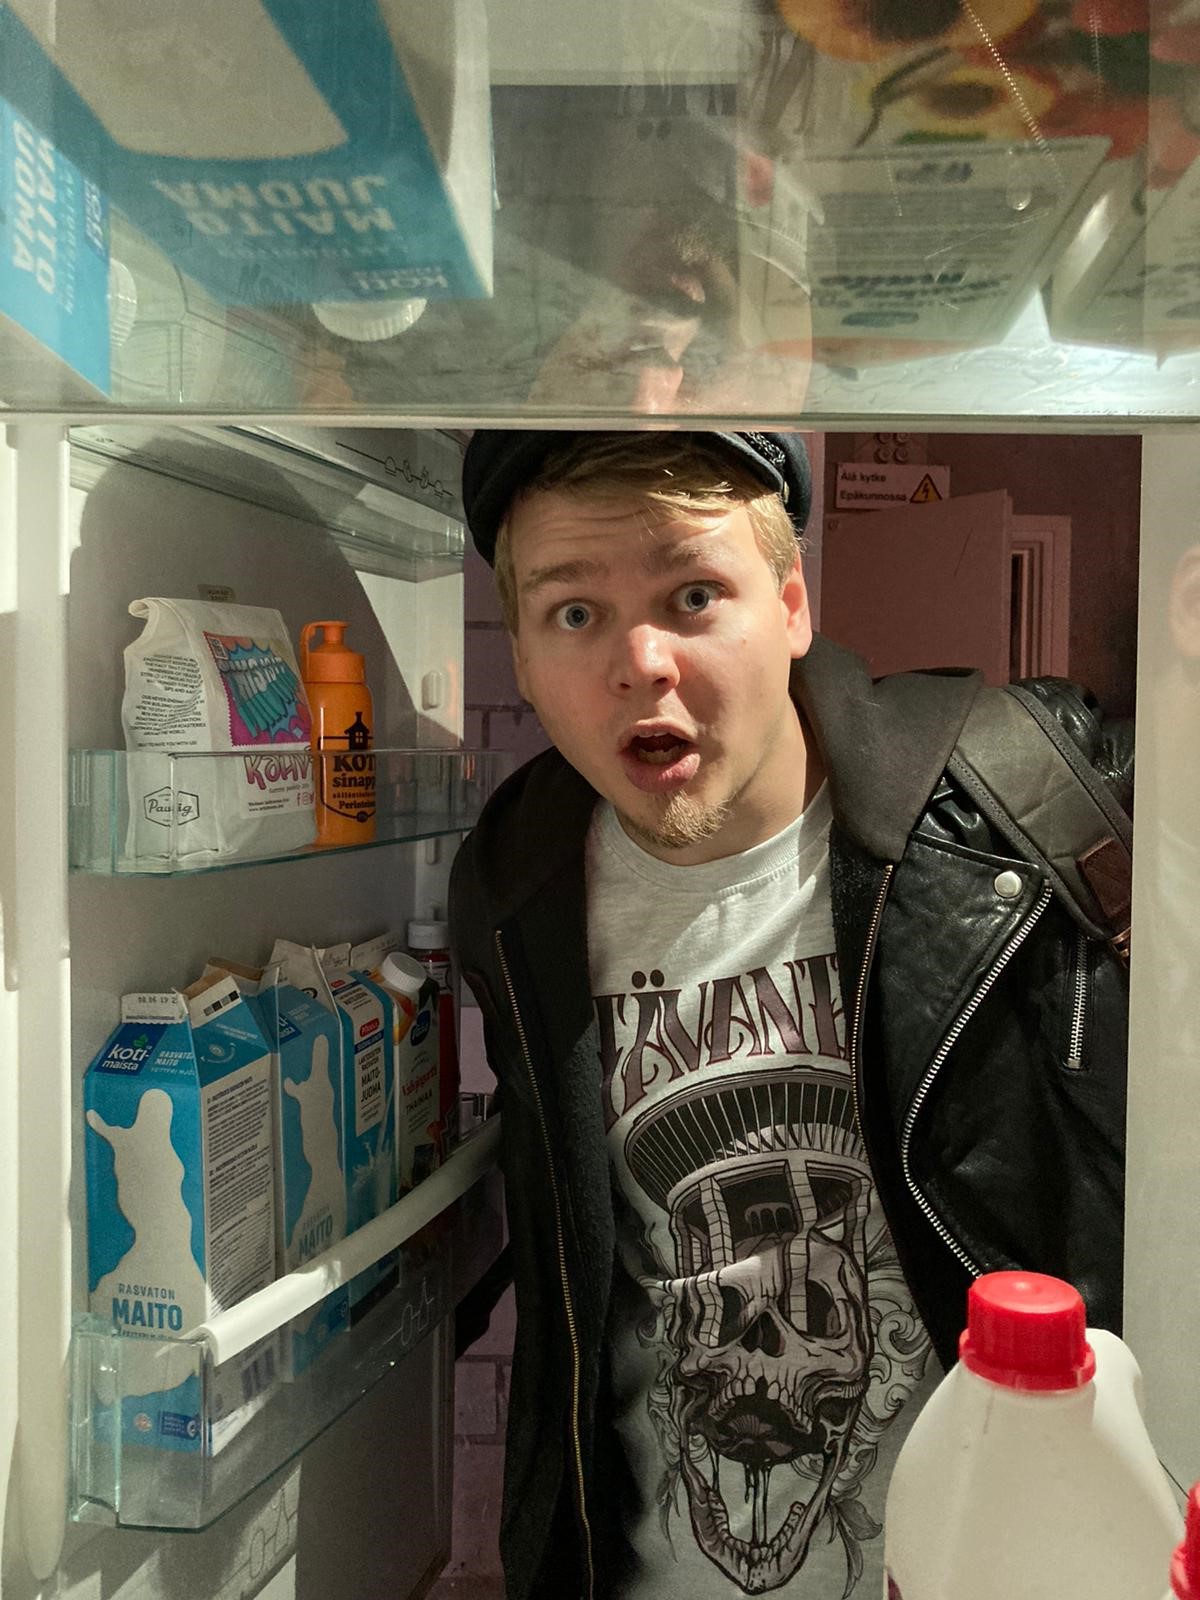 Ilmoisen hämmästynyt mies lakki päässä kurkistaa jääkaapin ovelta, maitopurkkeja on jääkaapin ovessa.